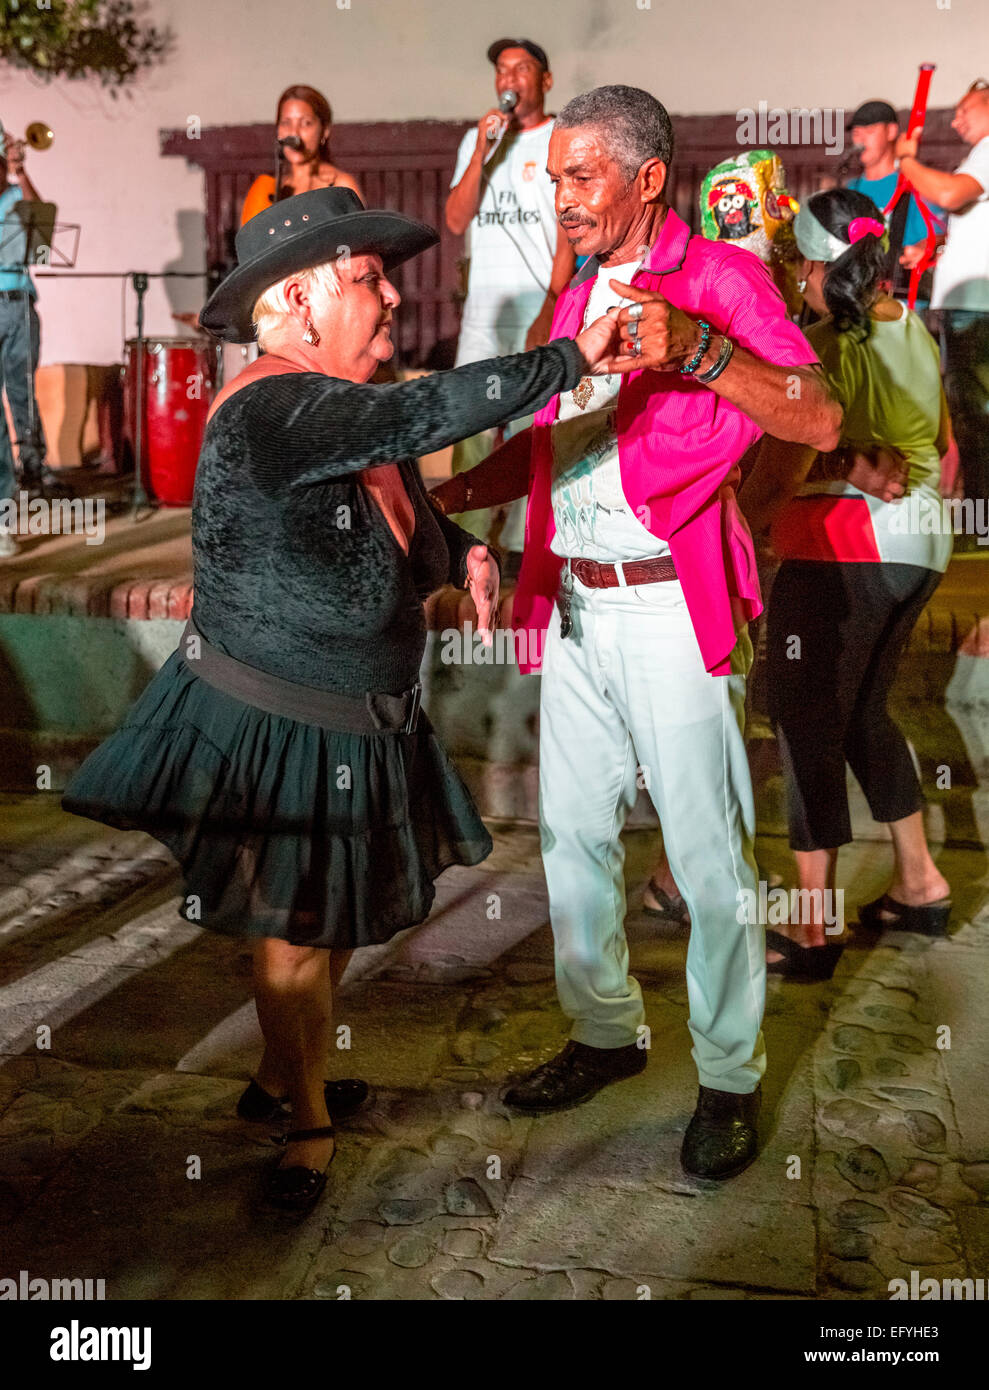 Ancianos cubanos disfrutando de bailar salsa al ritmo de la música de una banda en vivo, en un mercado en Trinidad, Provincia de Sancti Spíritus, Cuba Foto de stock